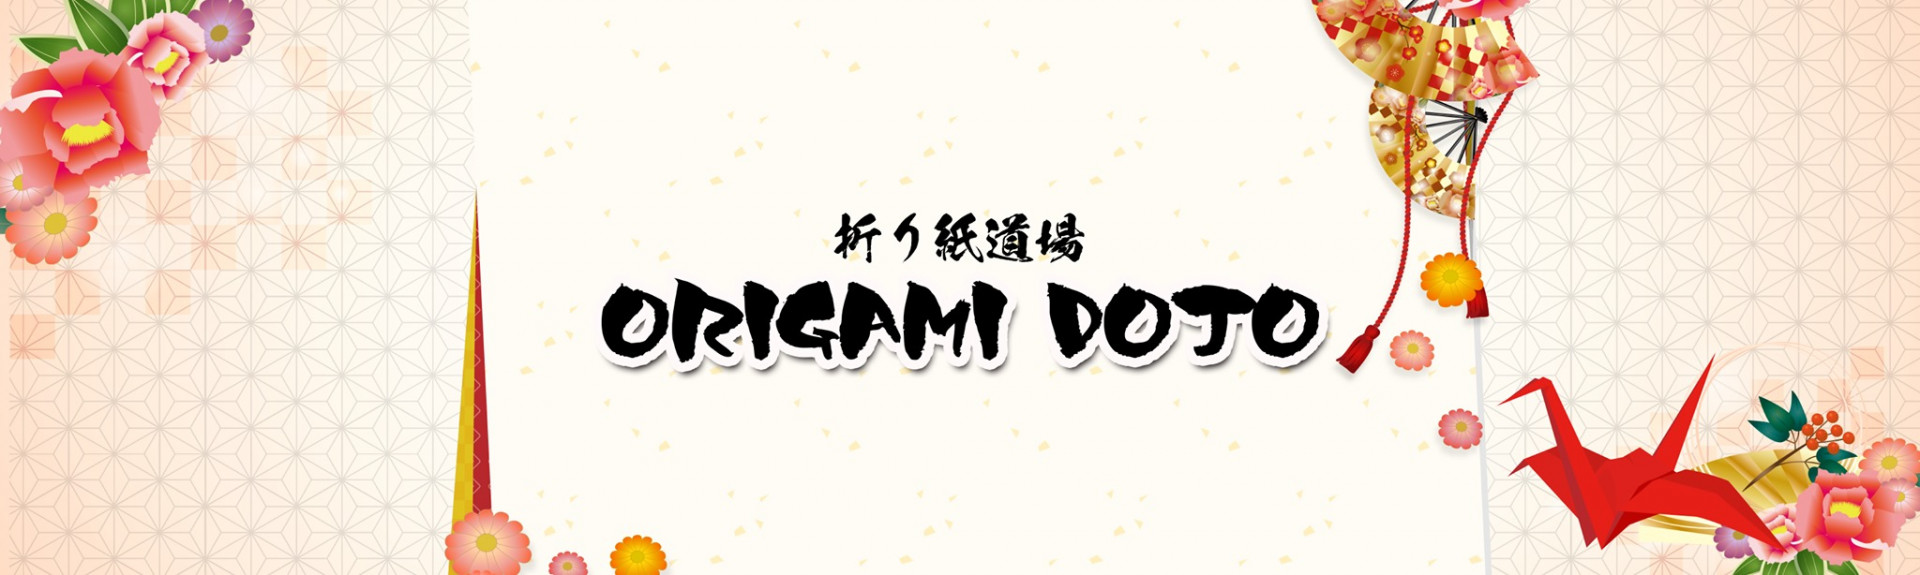 Origami Dojo